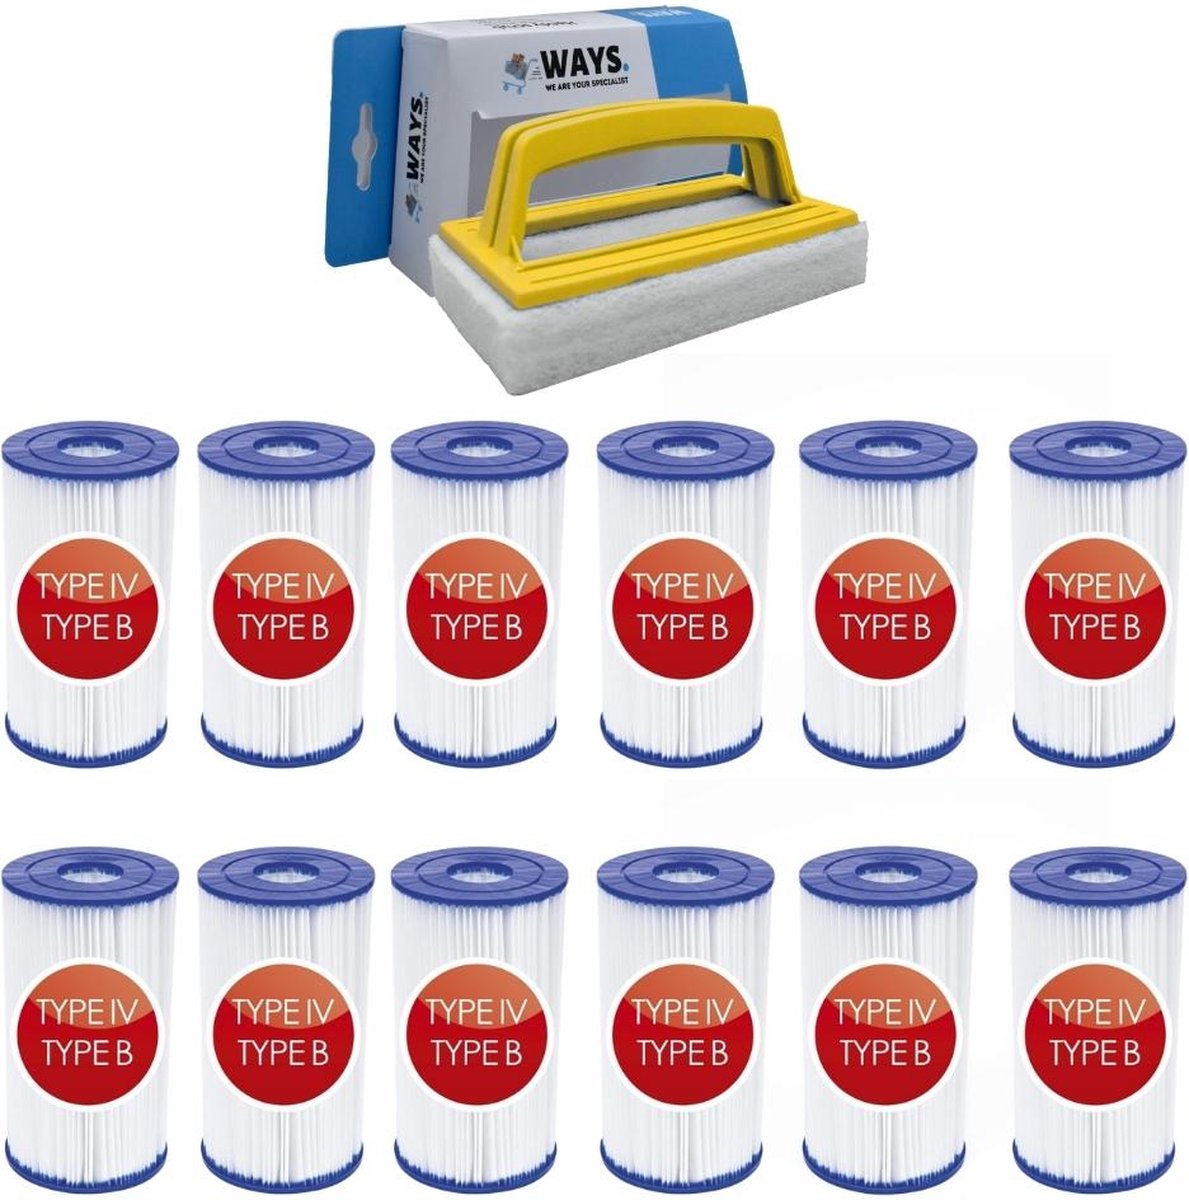 Bestway - Type IV filters geschikt voor filterpomp 58391 - 12 stuks & WAYS scrubborstel